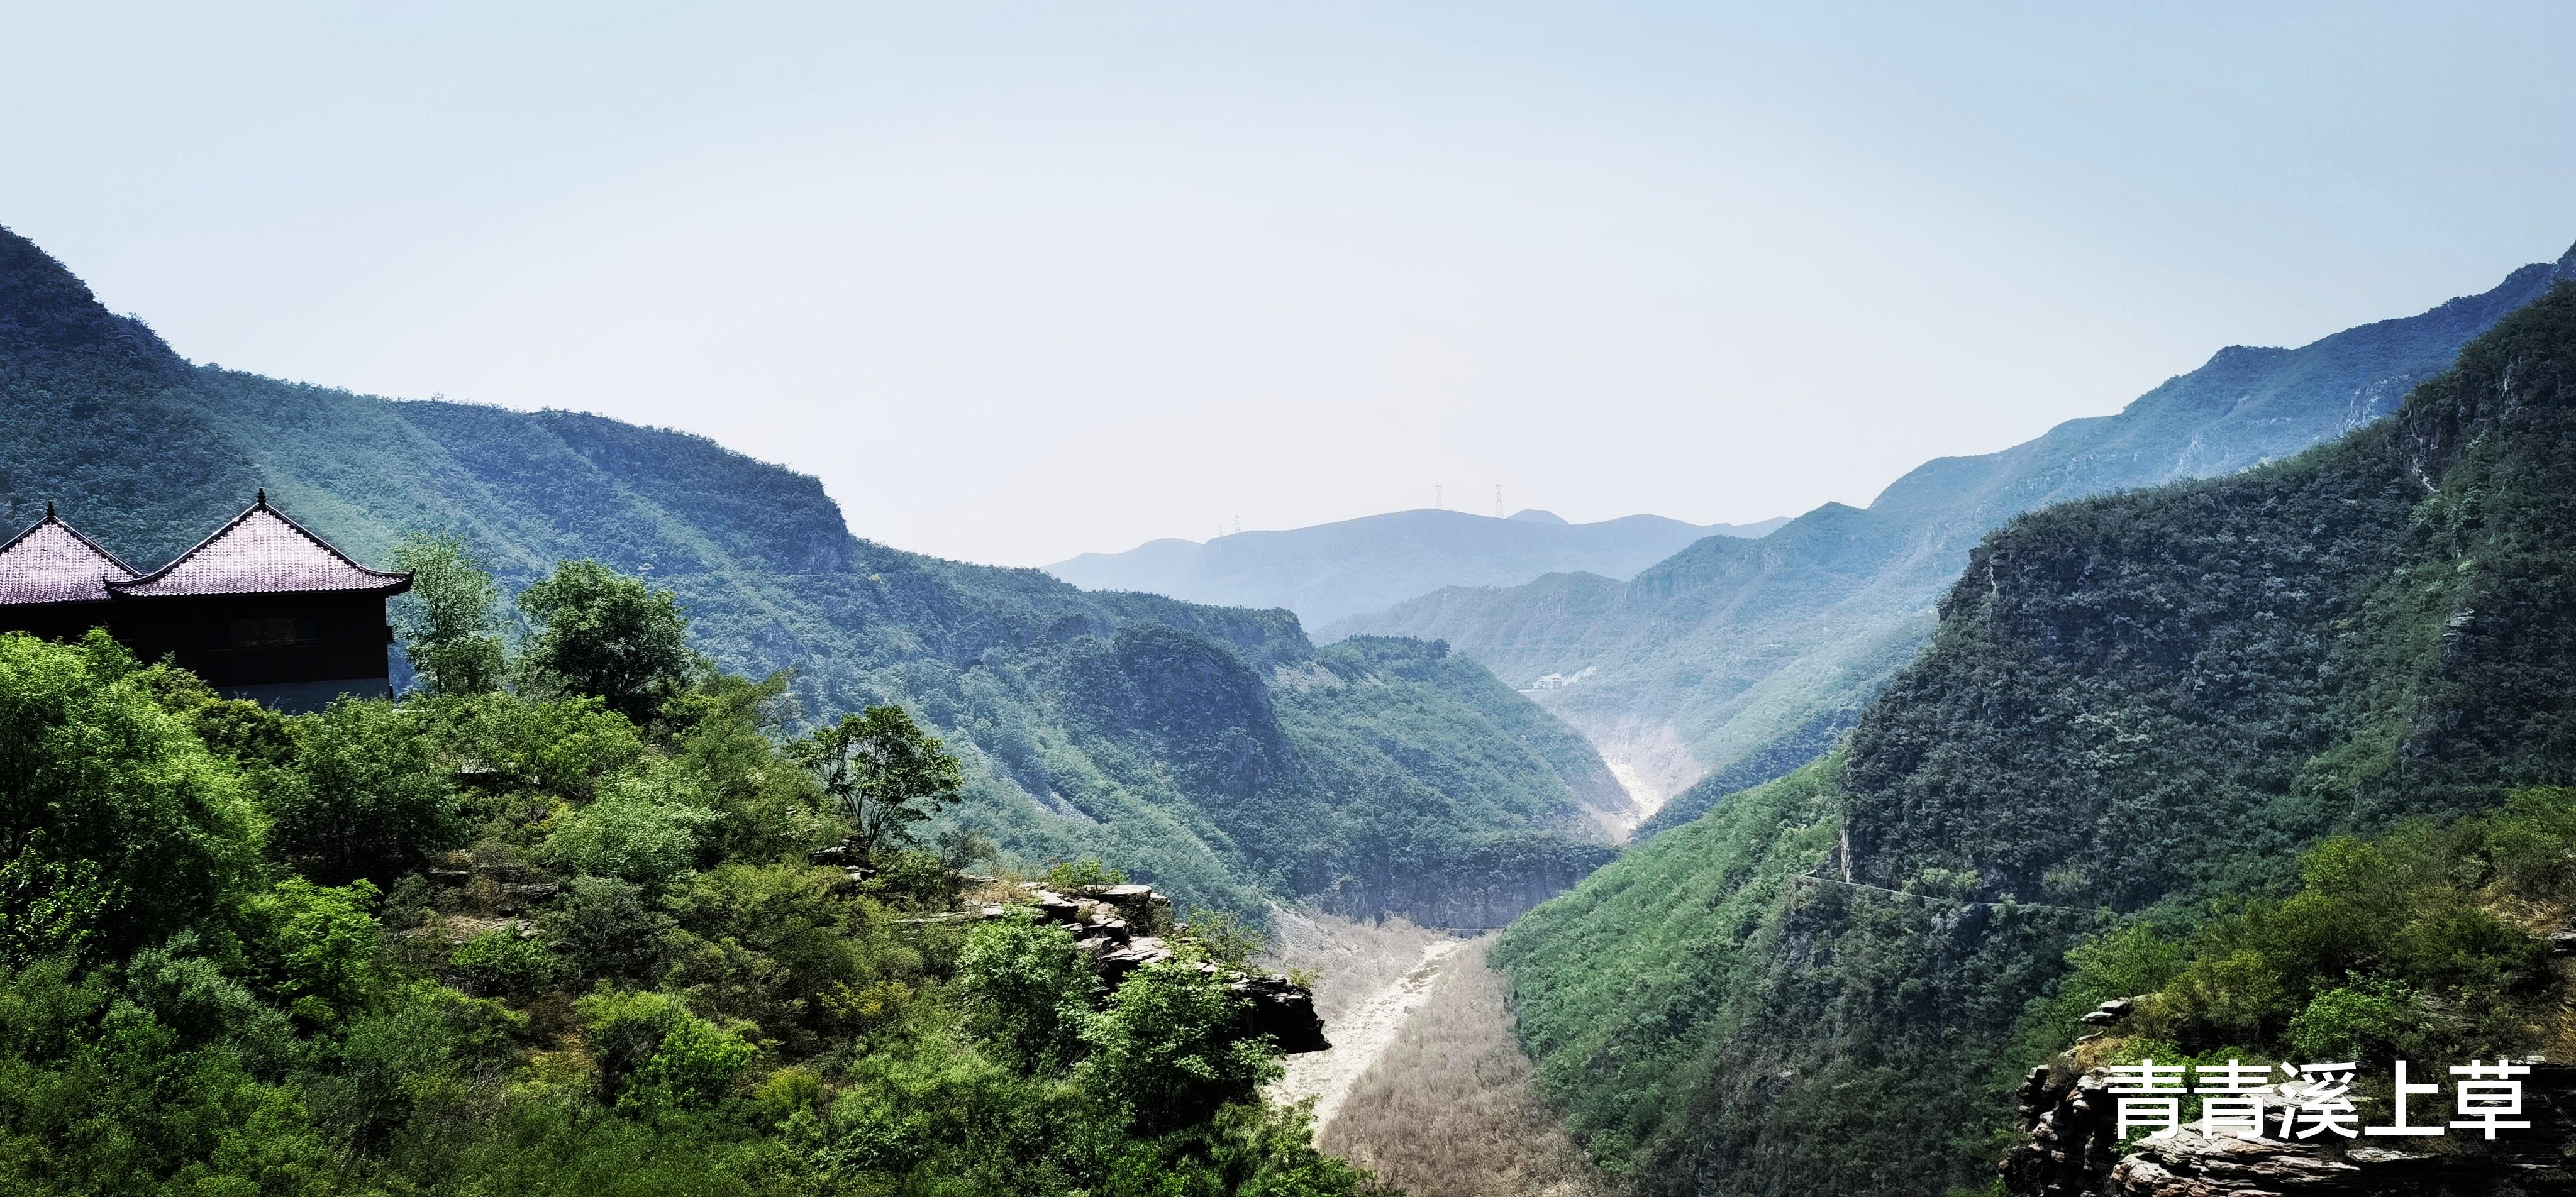 西藏|华夏第一奇峡——云台山红石峡